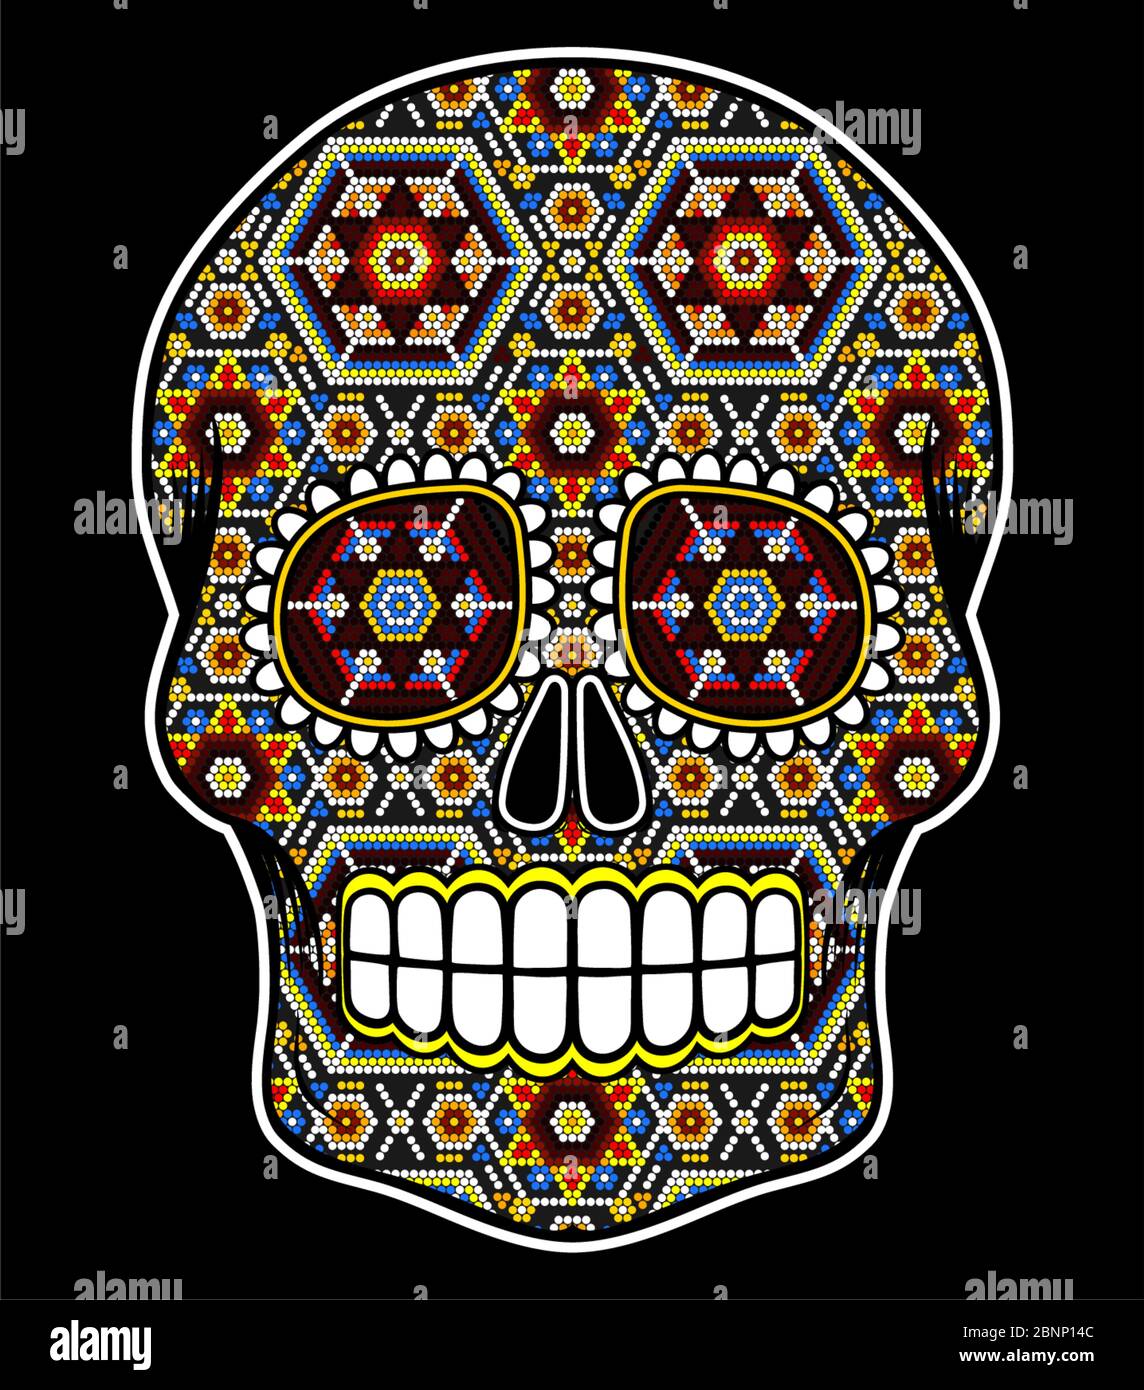 Illustrazione vettoriale del cranio colorato con perline ispirato all'arte messicana huichol e al tradizionale teschio da zucchero del Messico. Simbolo popolare di 'dia de muerto Illustrazione Vettoriale